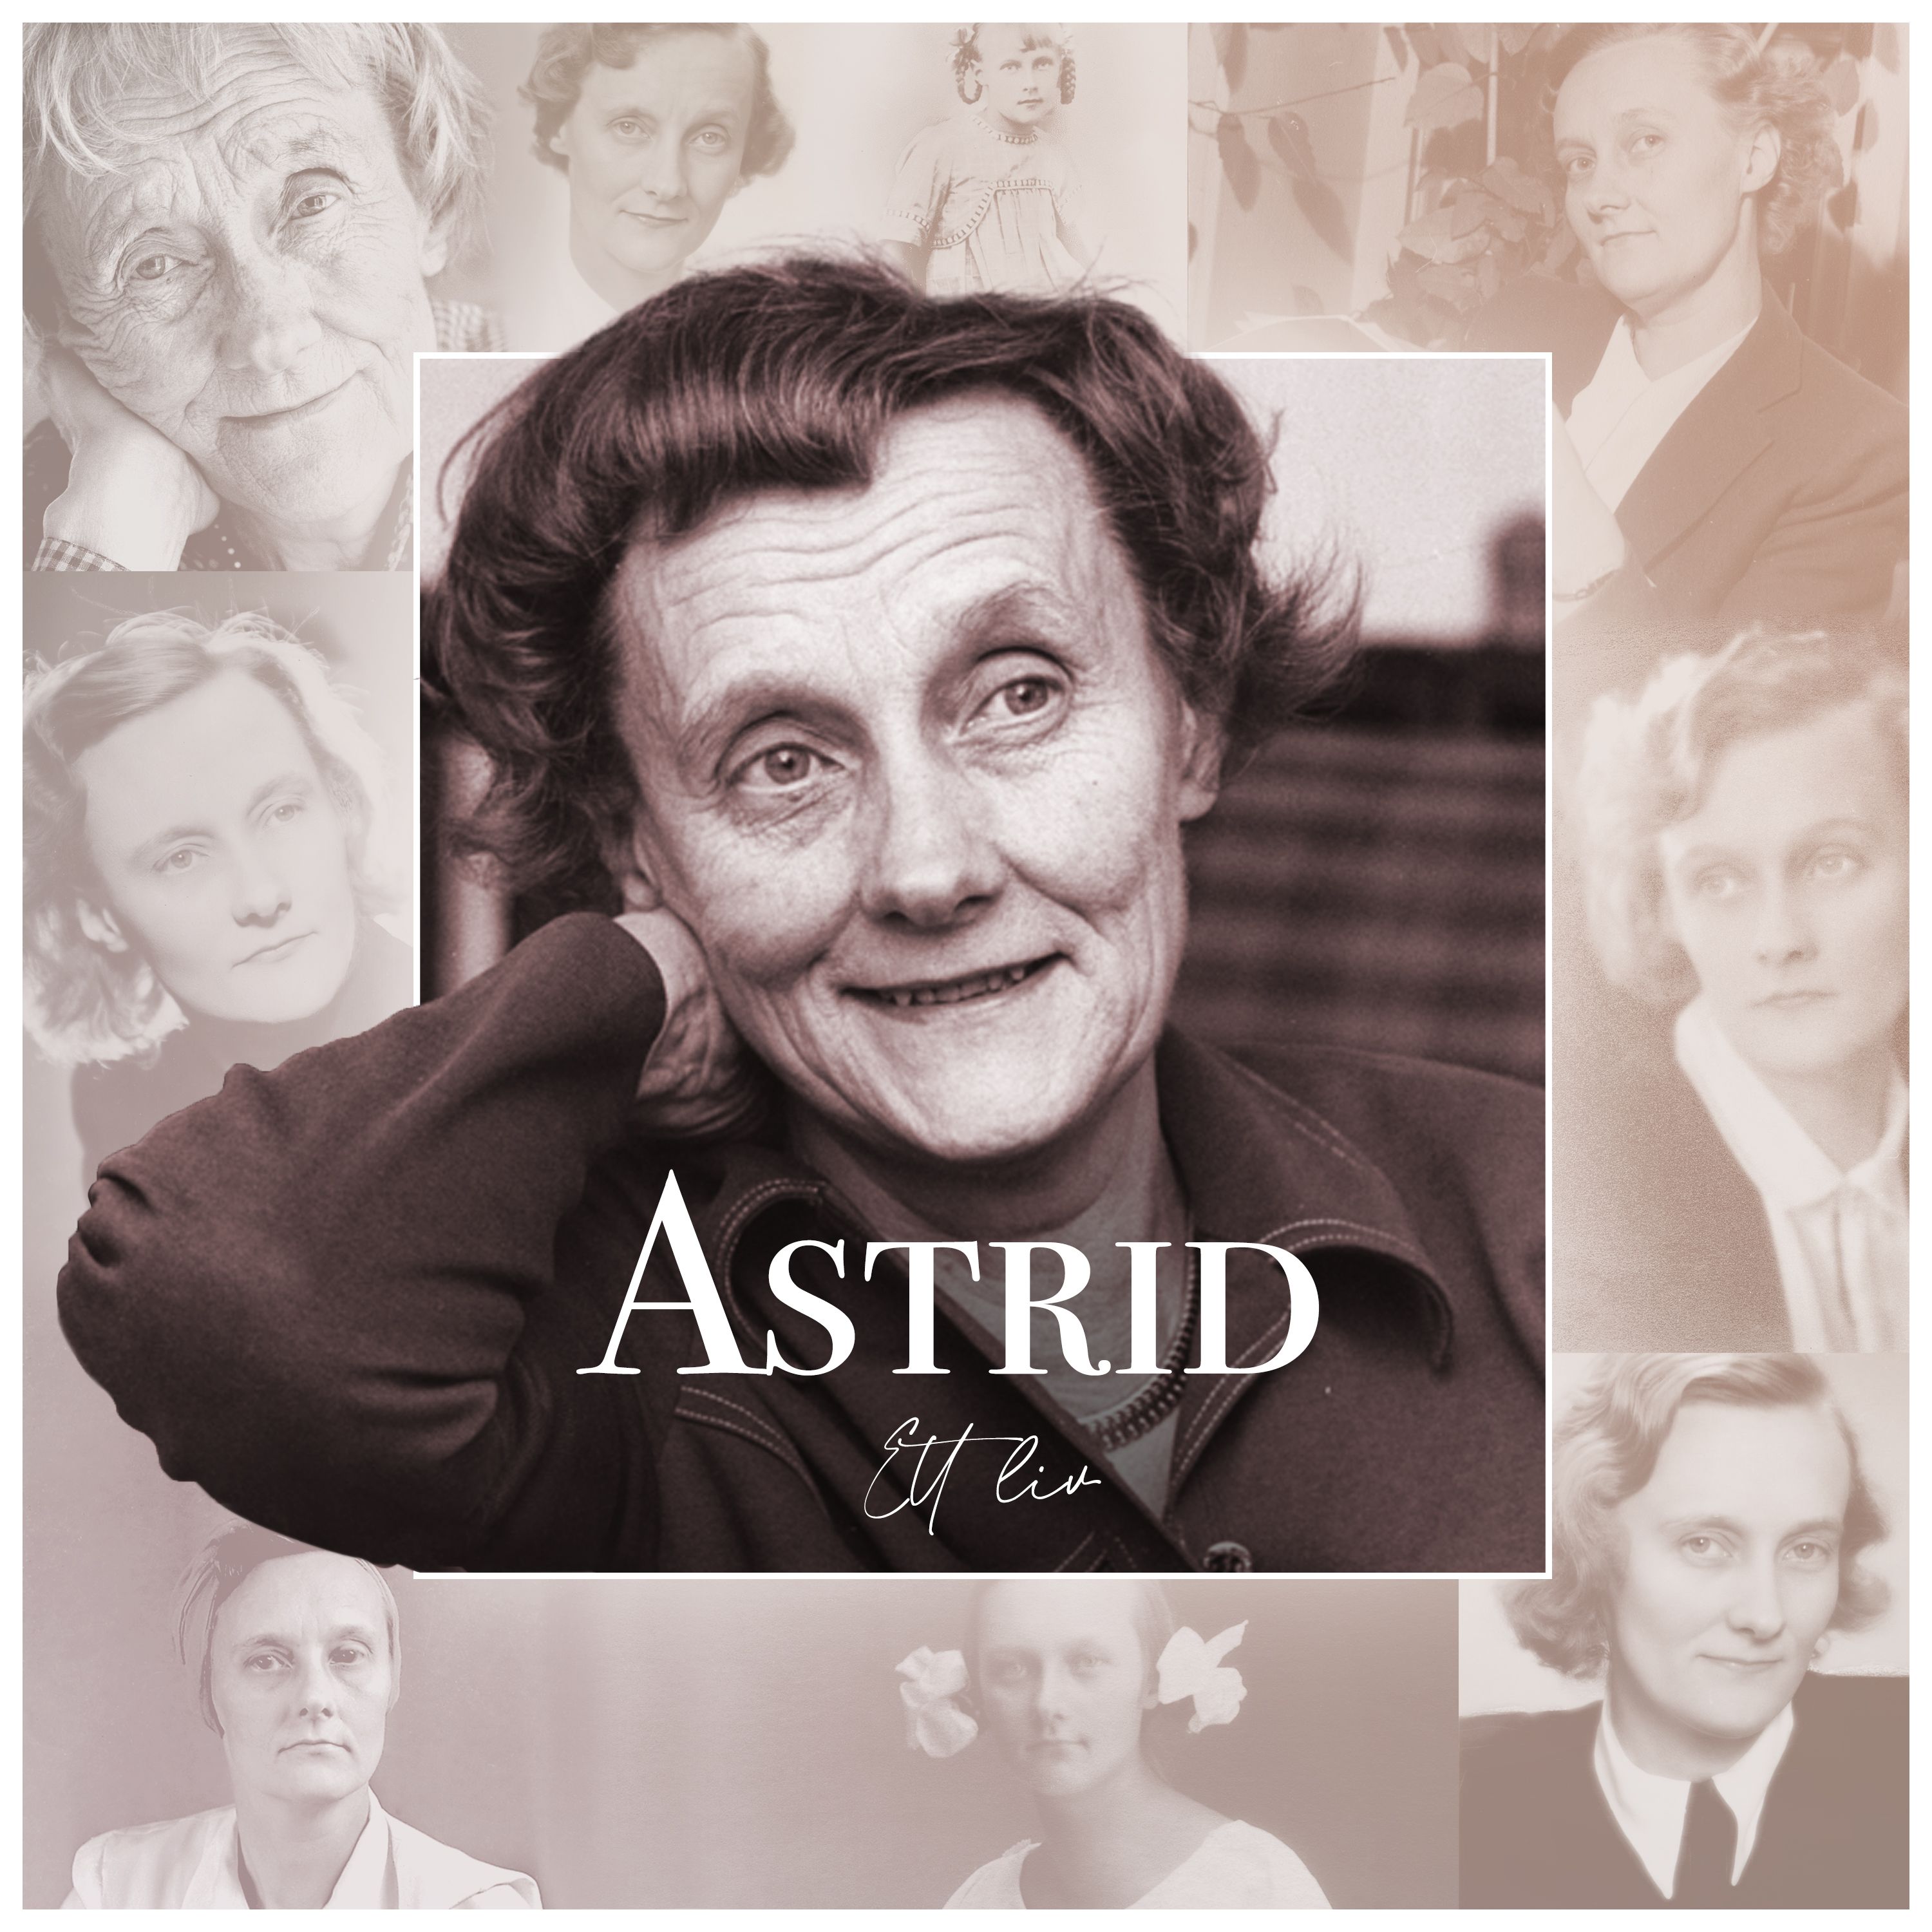 Astrid - Ett liv (Trailer)